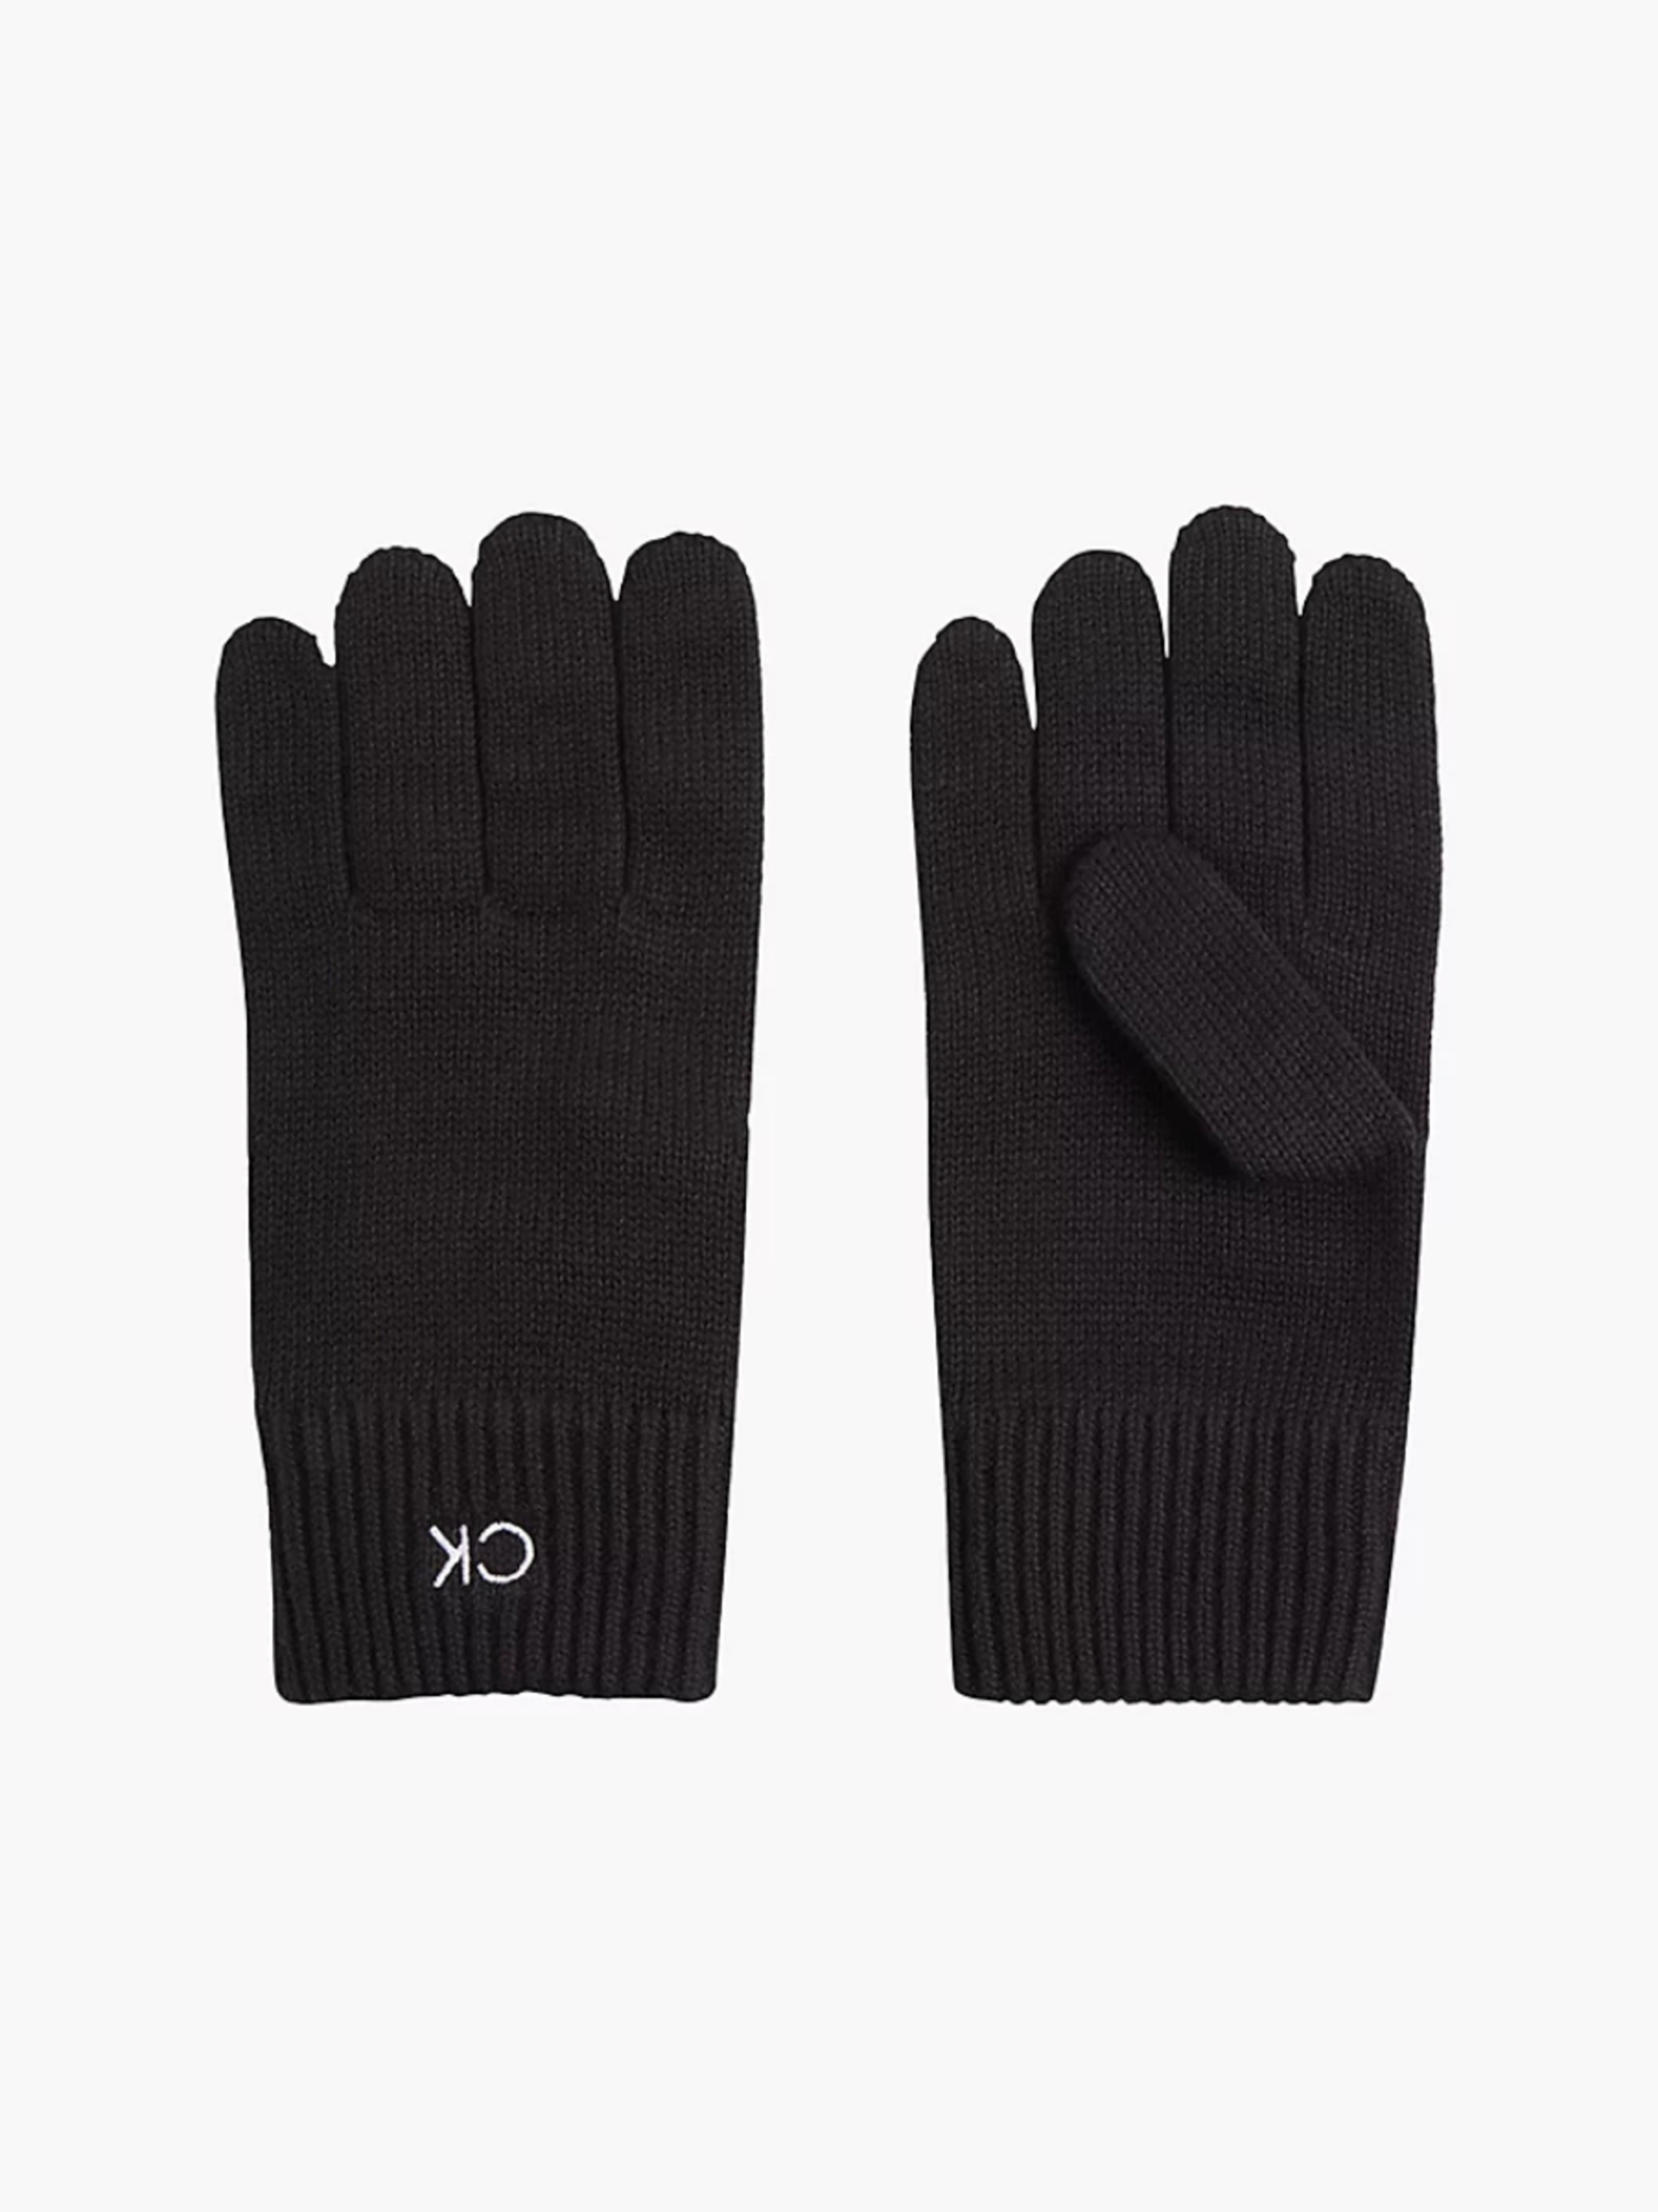 Calvin Klein pánské černé rukavice - OS (BAX)